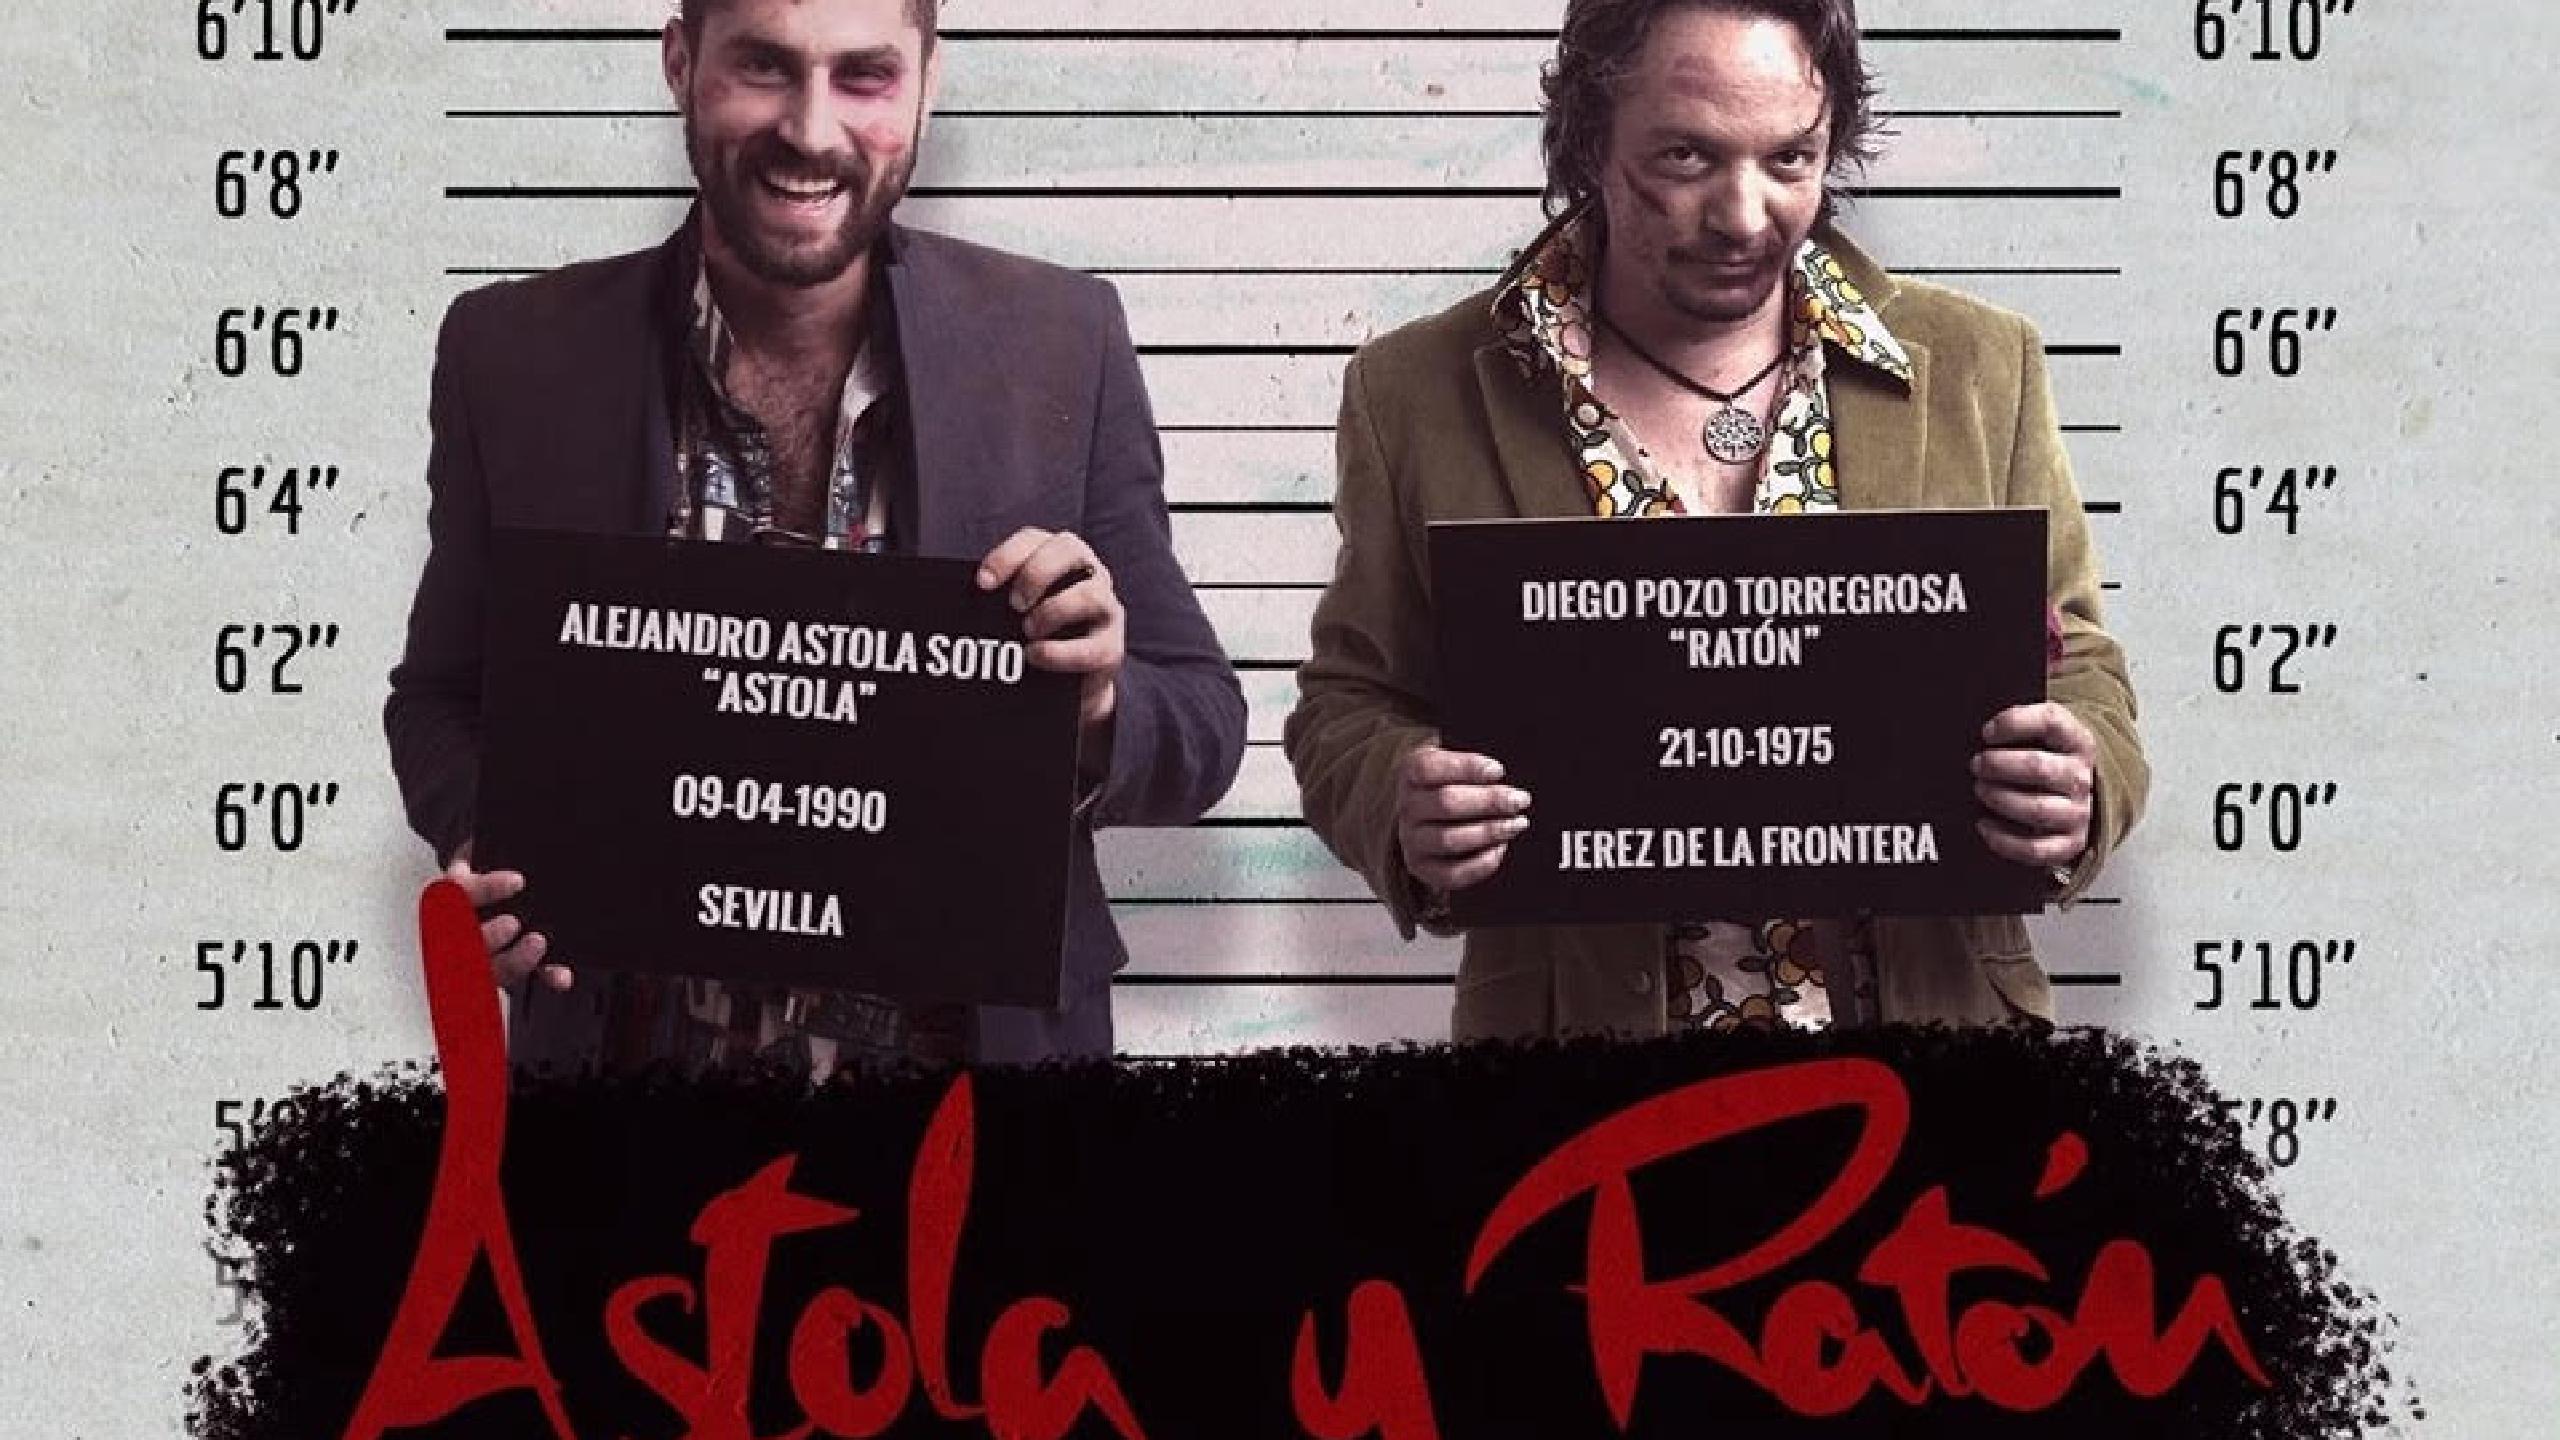 Astola y Ratón en Garaje Beat Club de Murcia